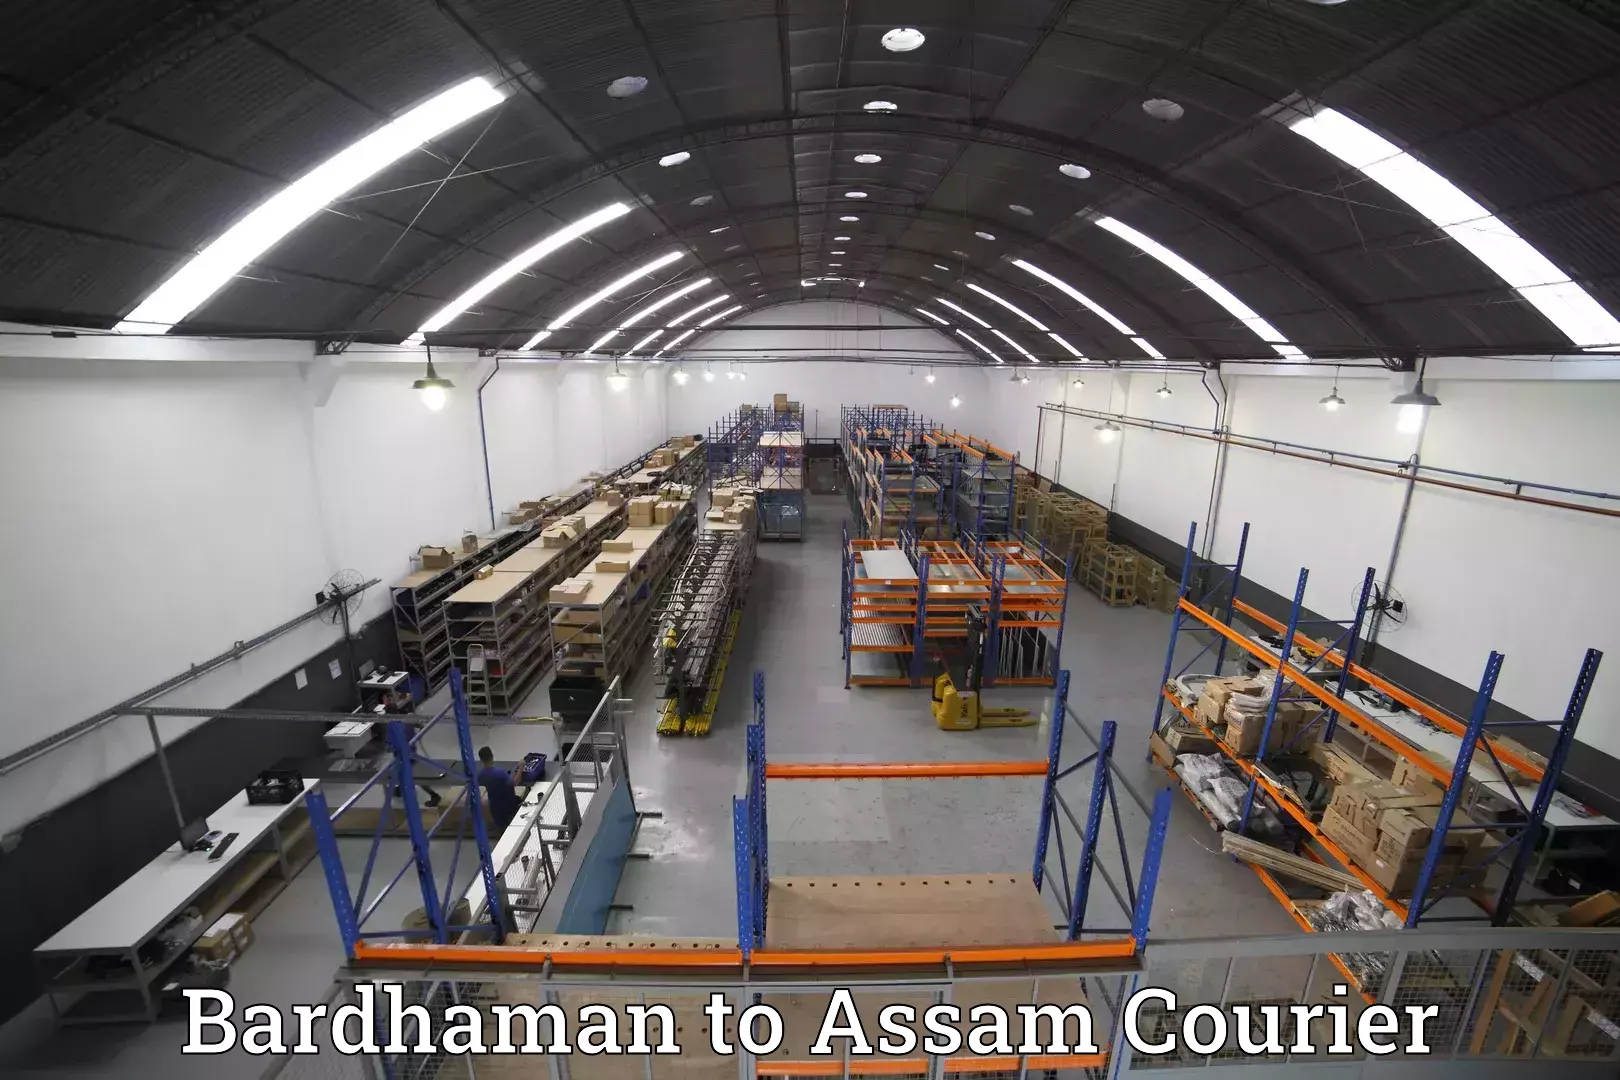 Luggage transport company Bardhaman to Assam